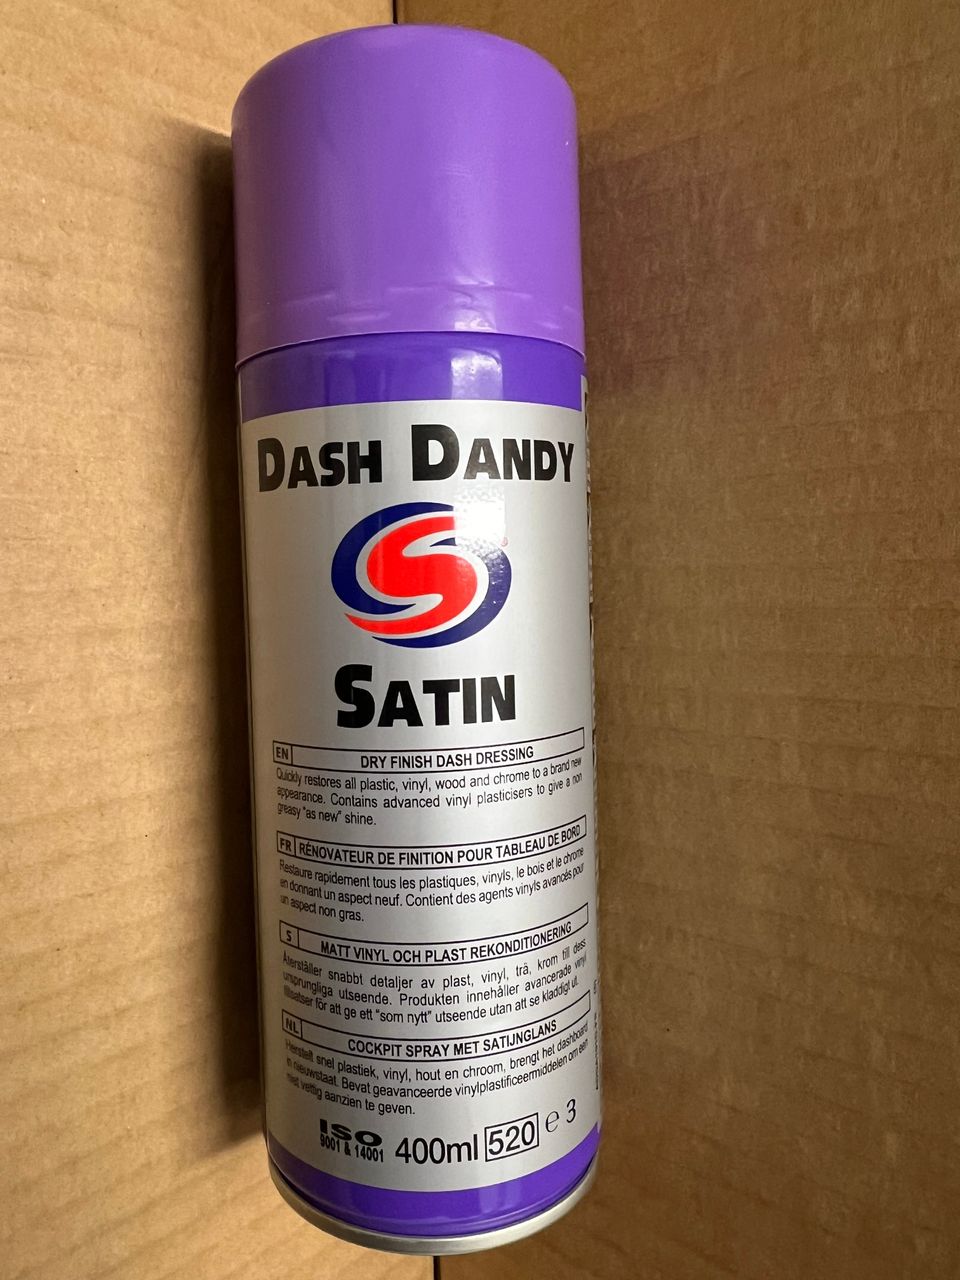 DASH DANY SATIN spray